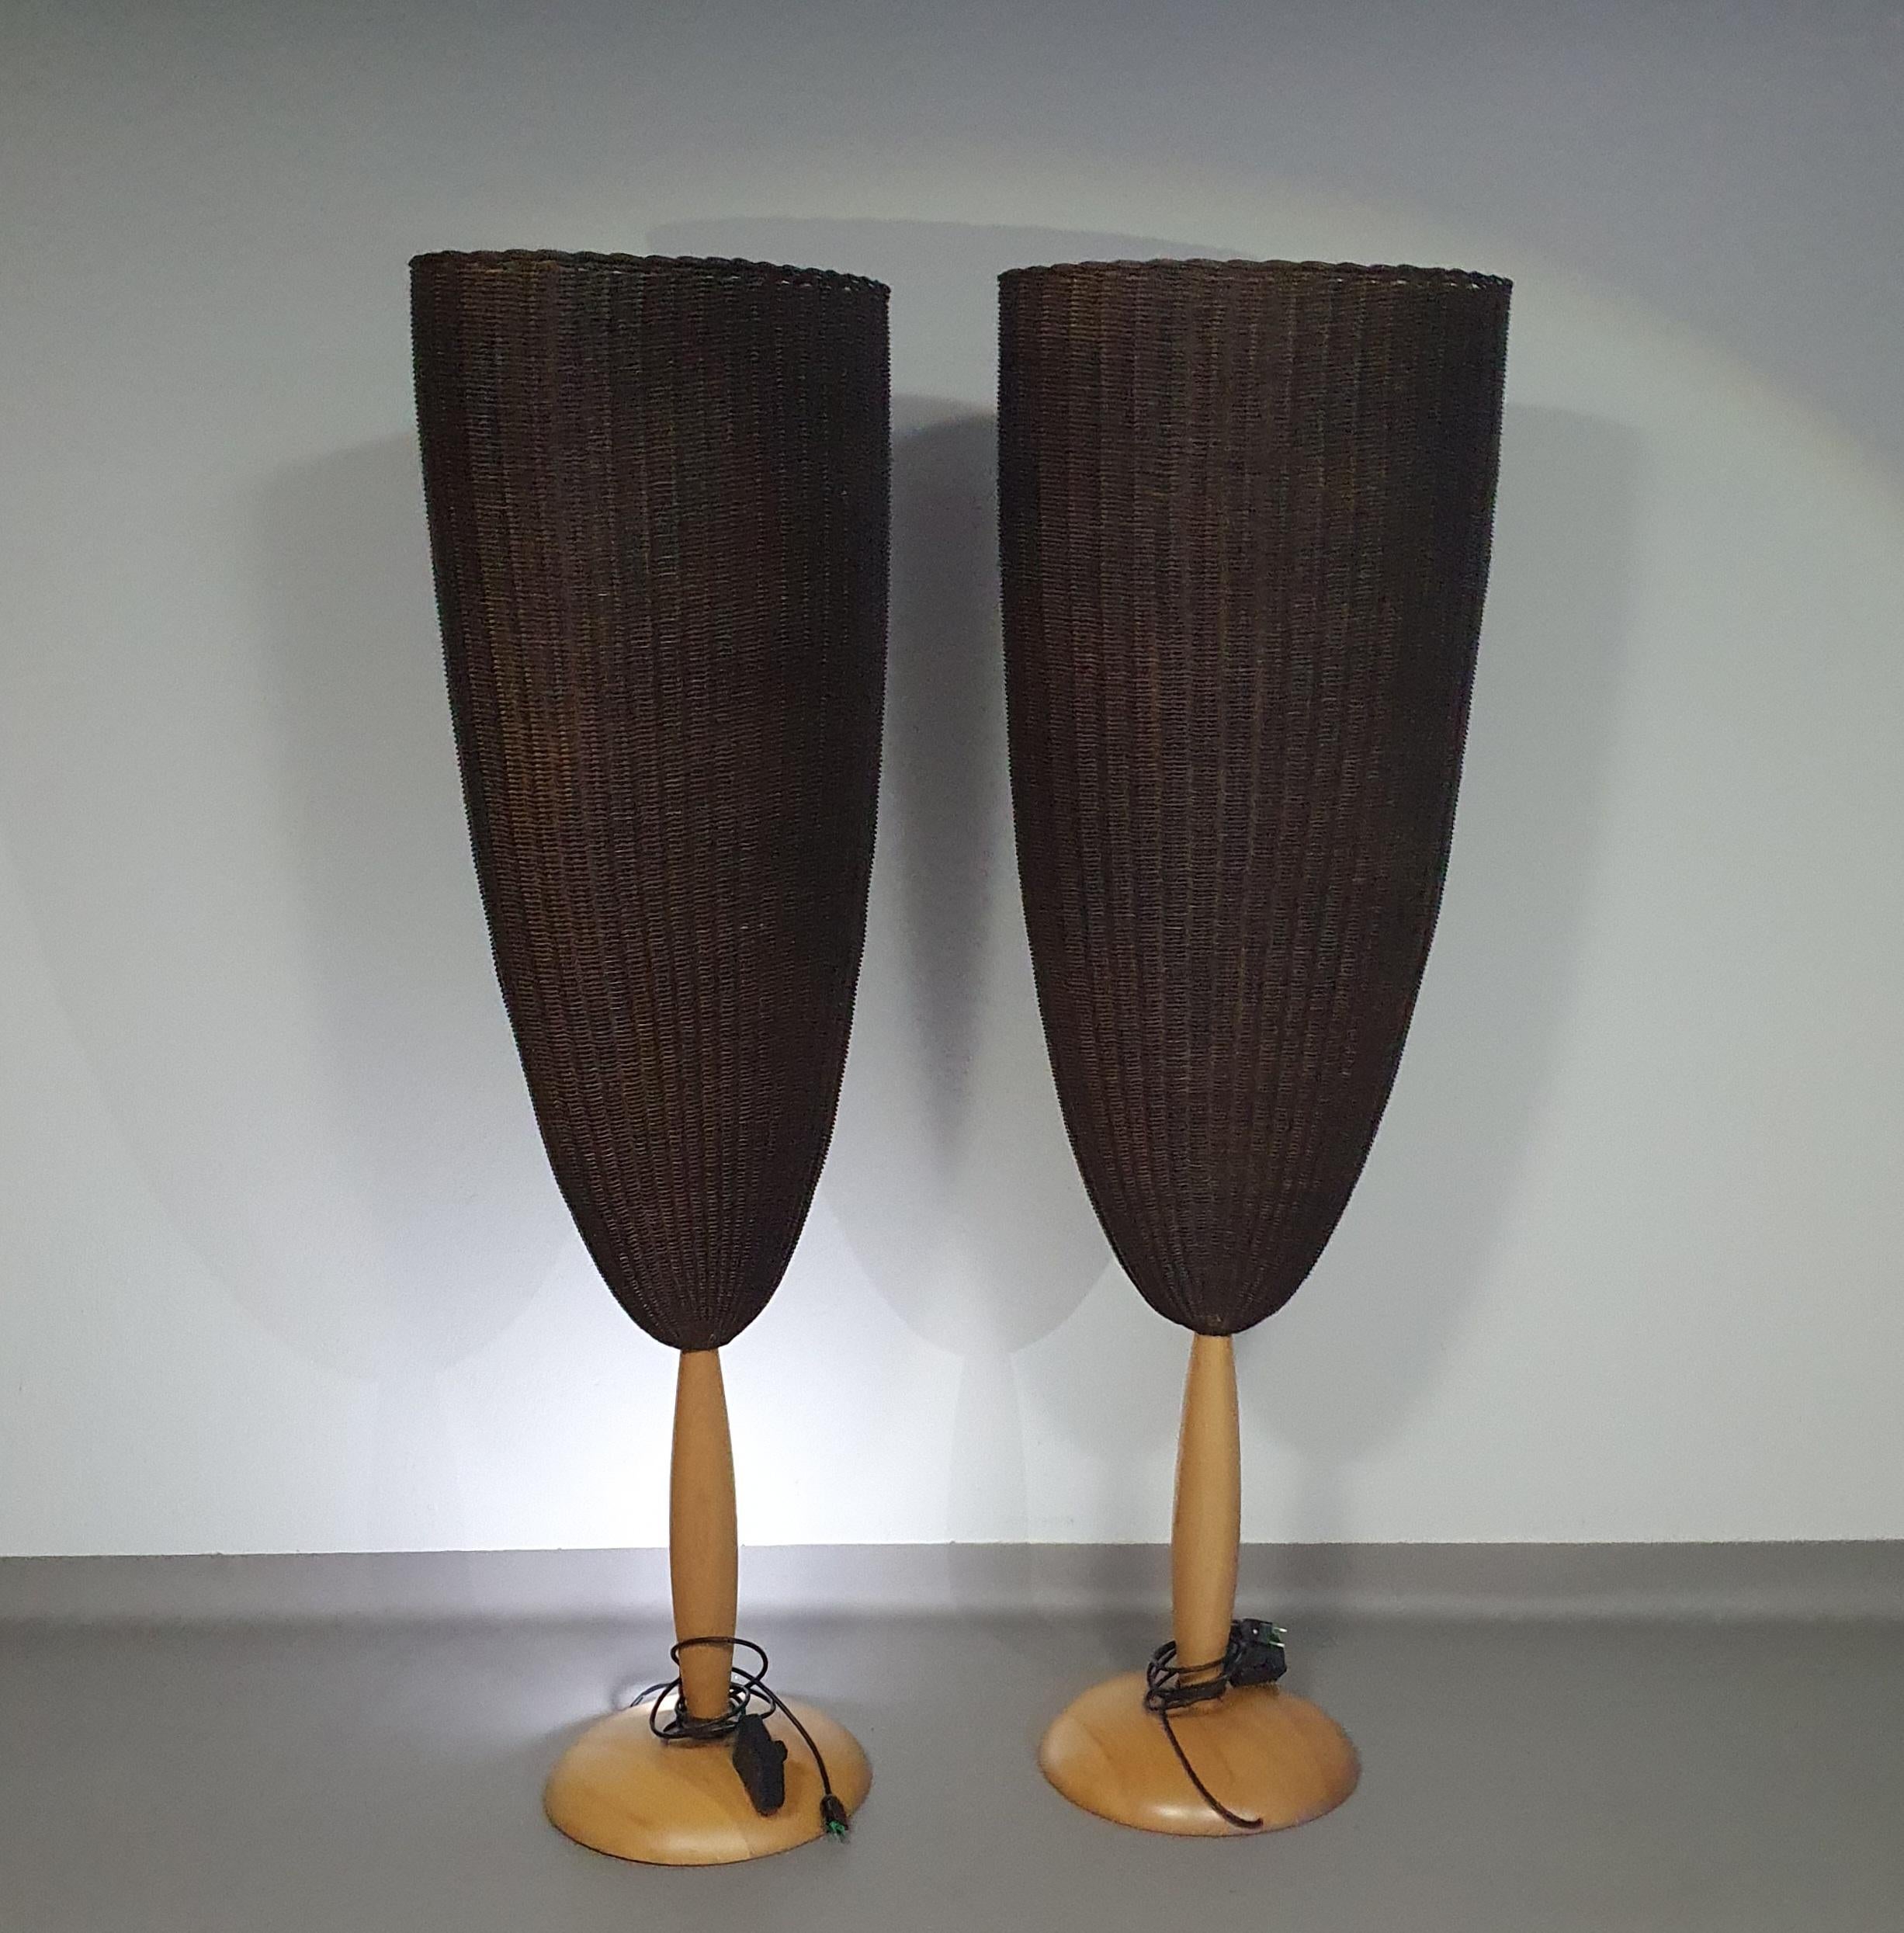 Organisch-moderne Flûte Stehleuchten mit großem Lampenschirm aus geflochtenem Rohr, der auf einem geschnitzten Buchenholzsockel sitzt, entworfen von Marco Agnoli für Pierantonio Bonacina, Italien 1991.